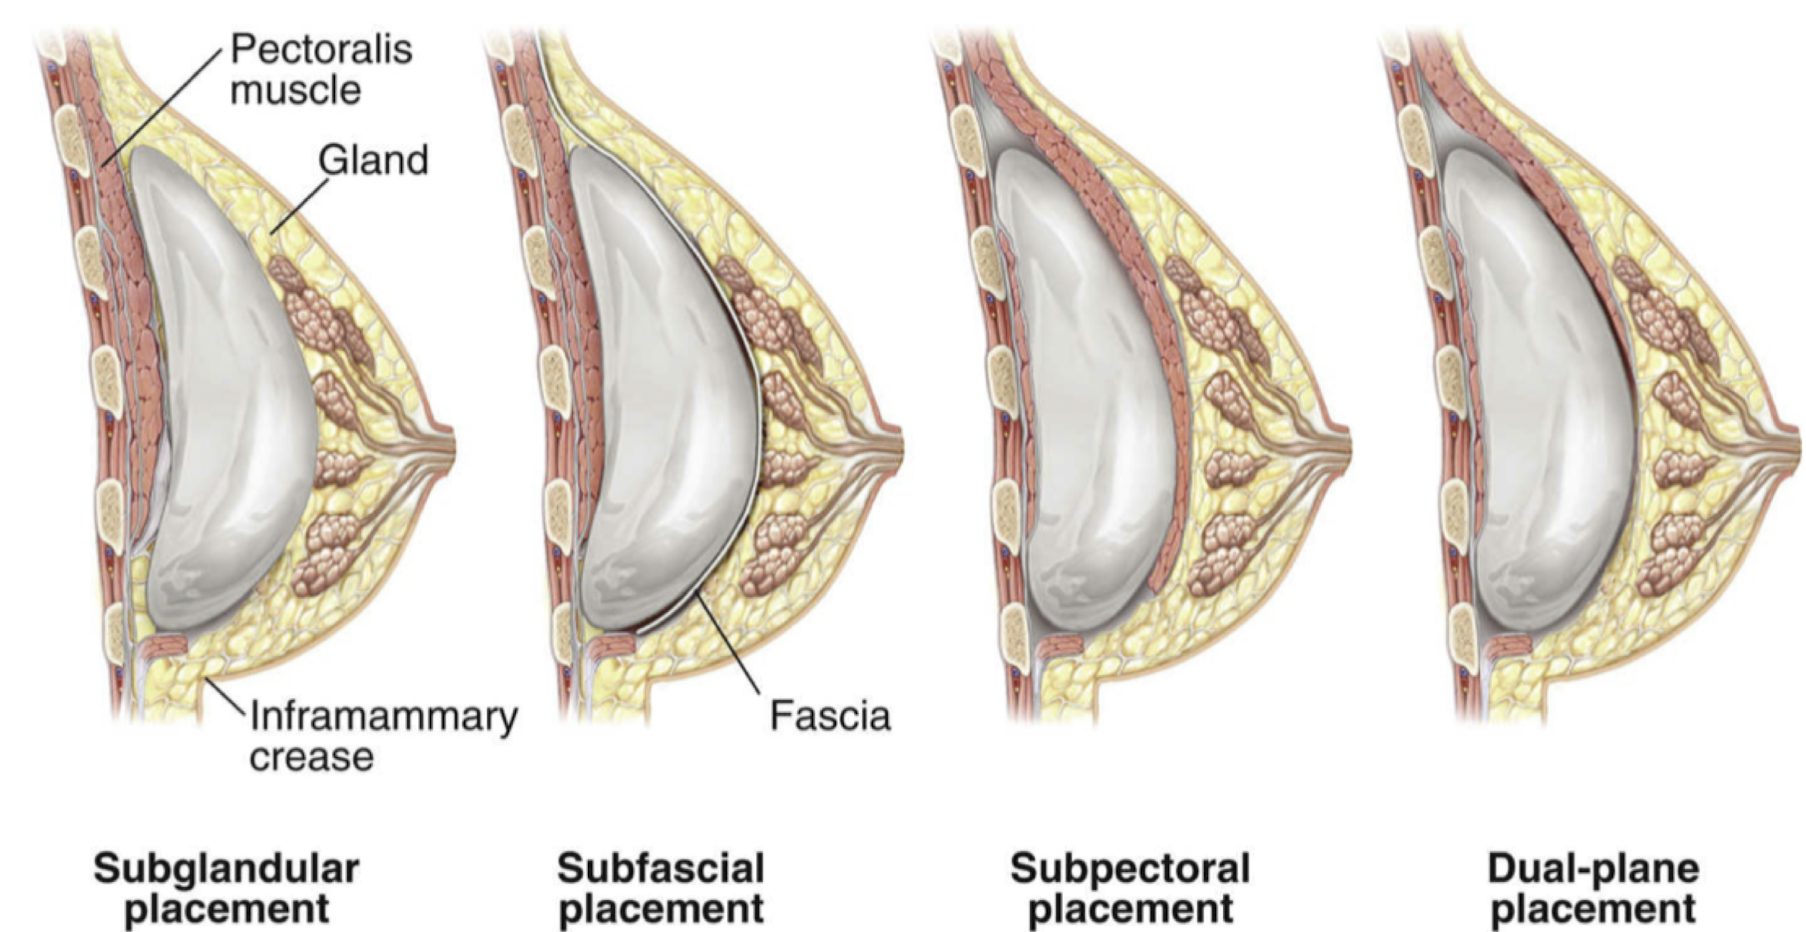 Borstimplantaten kunnen in 4 verschillende vlakken worden geplaatst, afhankelijk van verschillende factoren: achter de spier, voor de spier, onder de spierfascia, dual plane